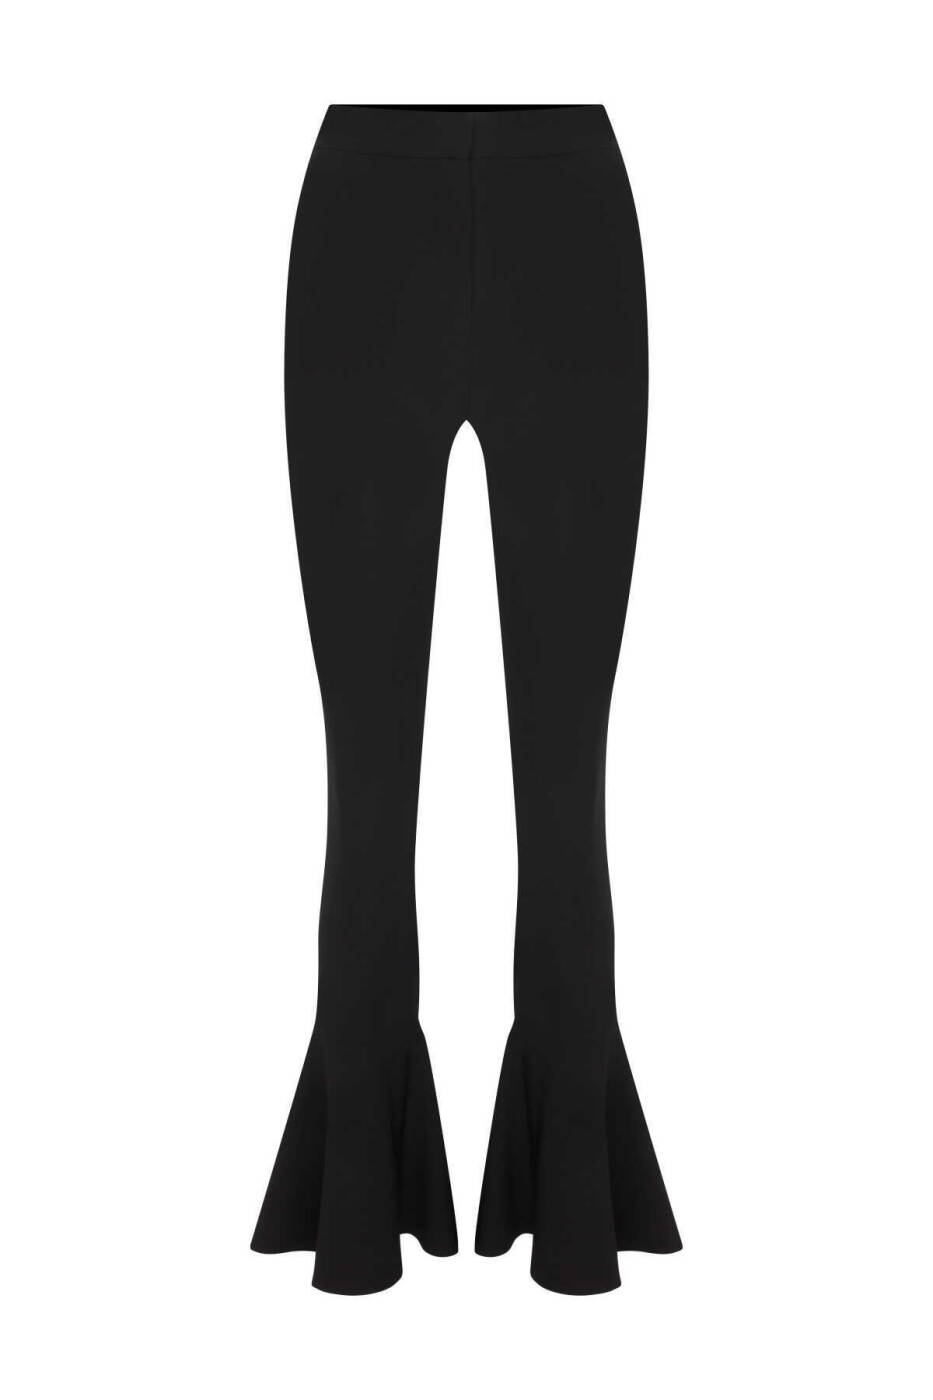  Düşük Bel Volanlı Paça Detaylı Likralı Krep Kadın Pantolon Siyah - 1